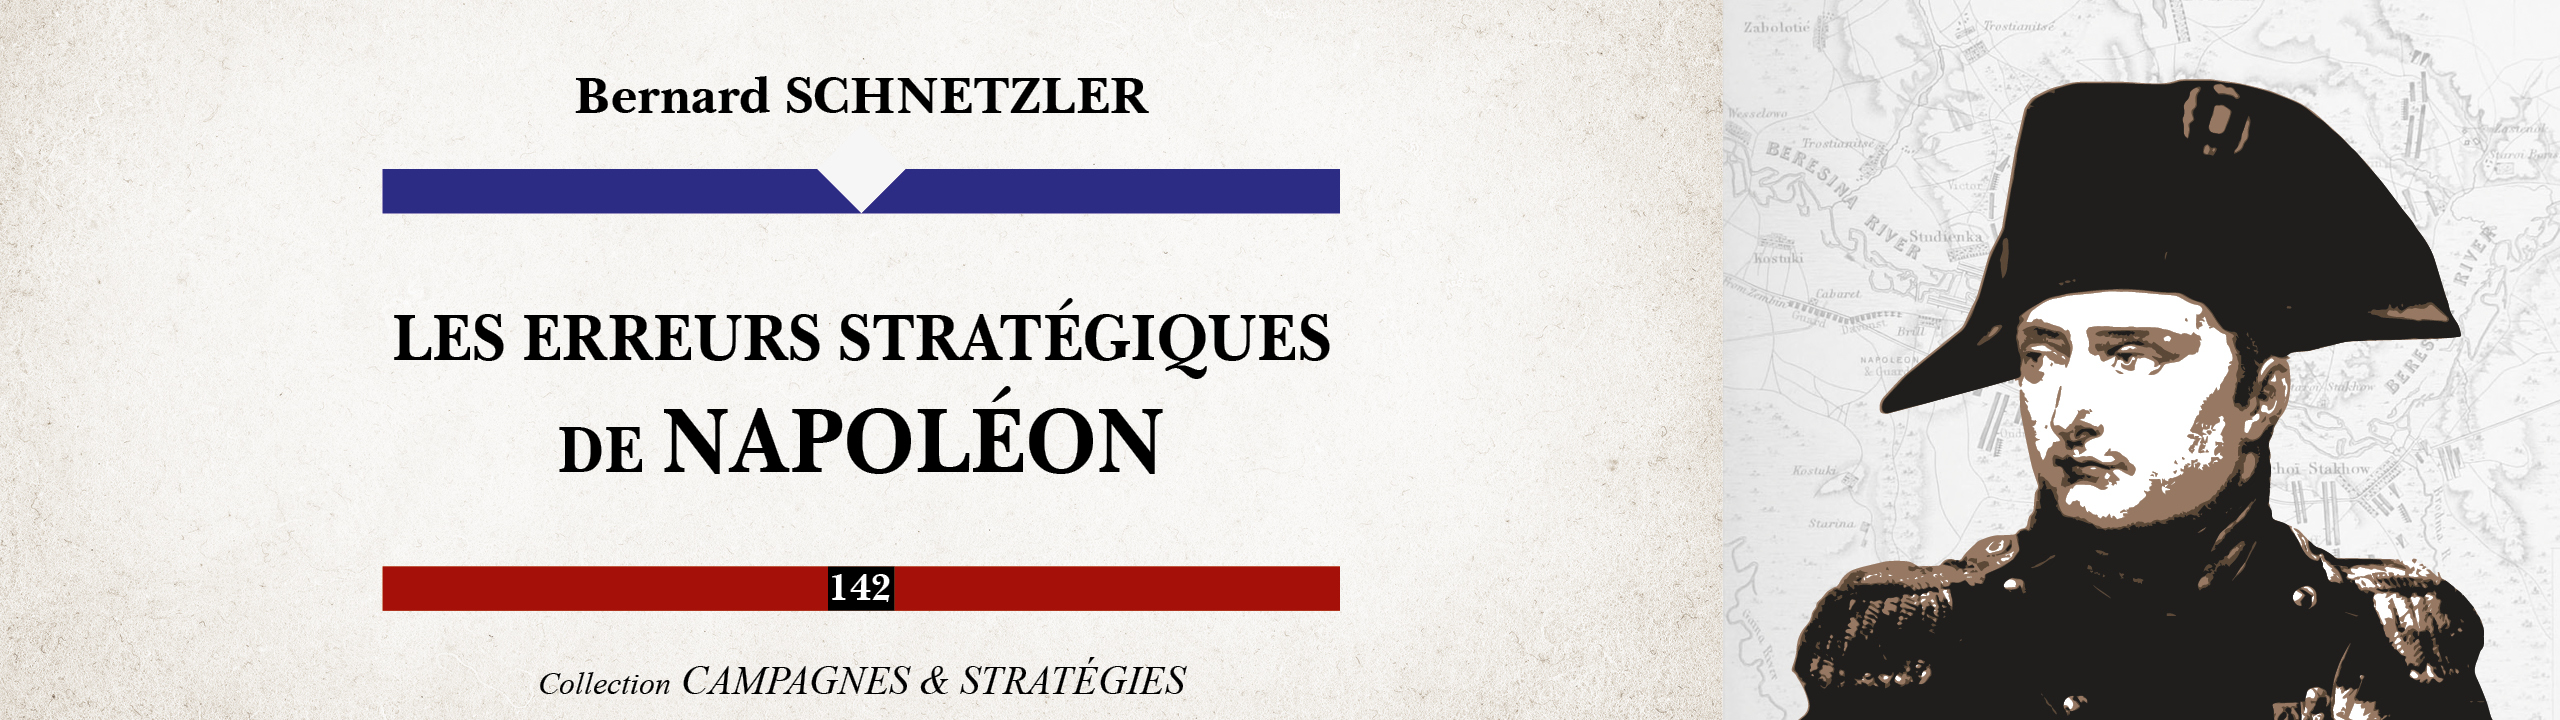 Les erreurs stratégiques de Napoléon - Bernard Schnetzler